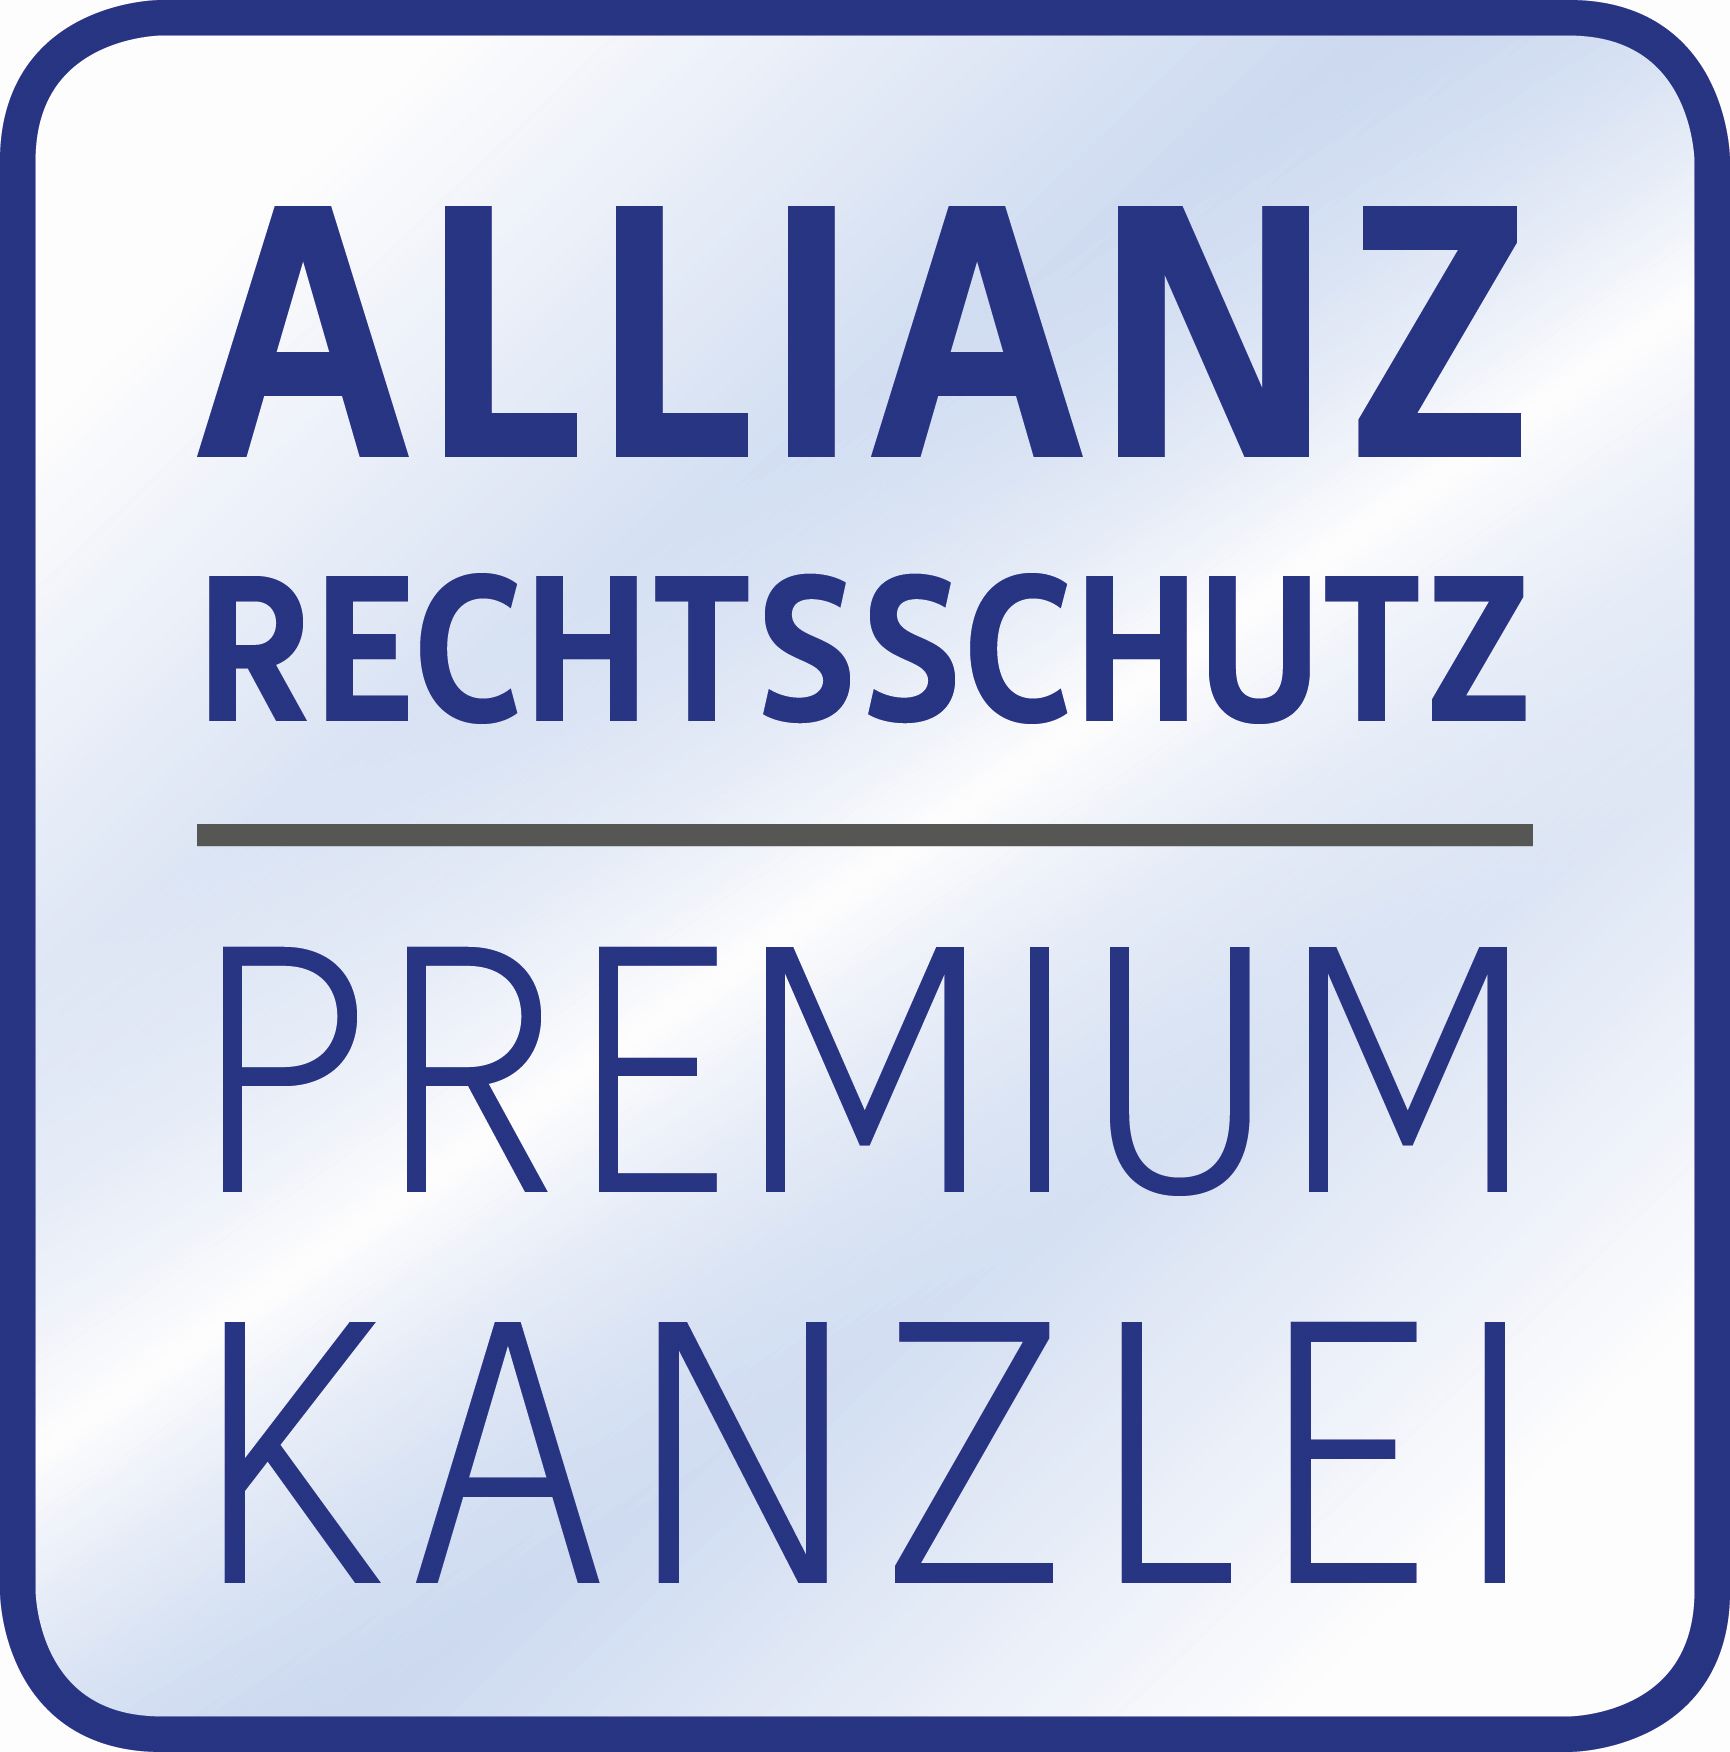 Allianz Premium Kanzlei